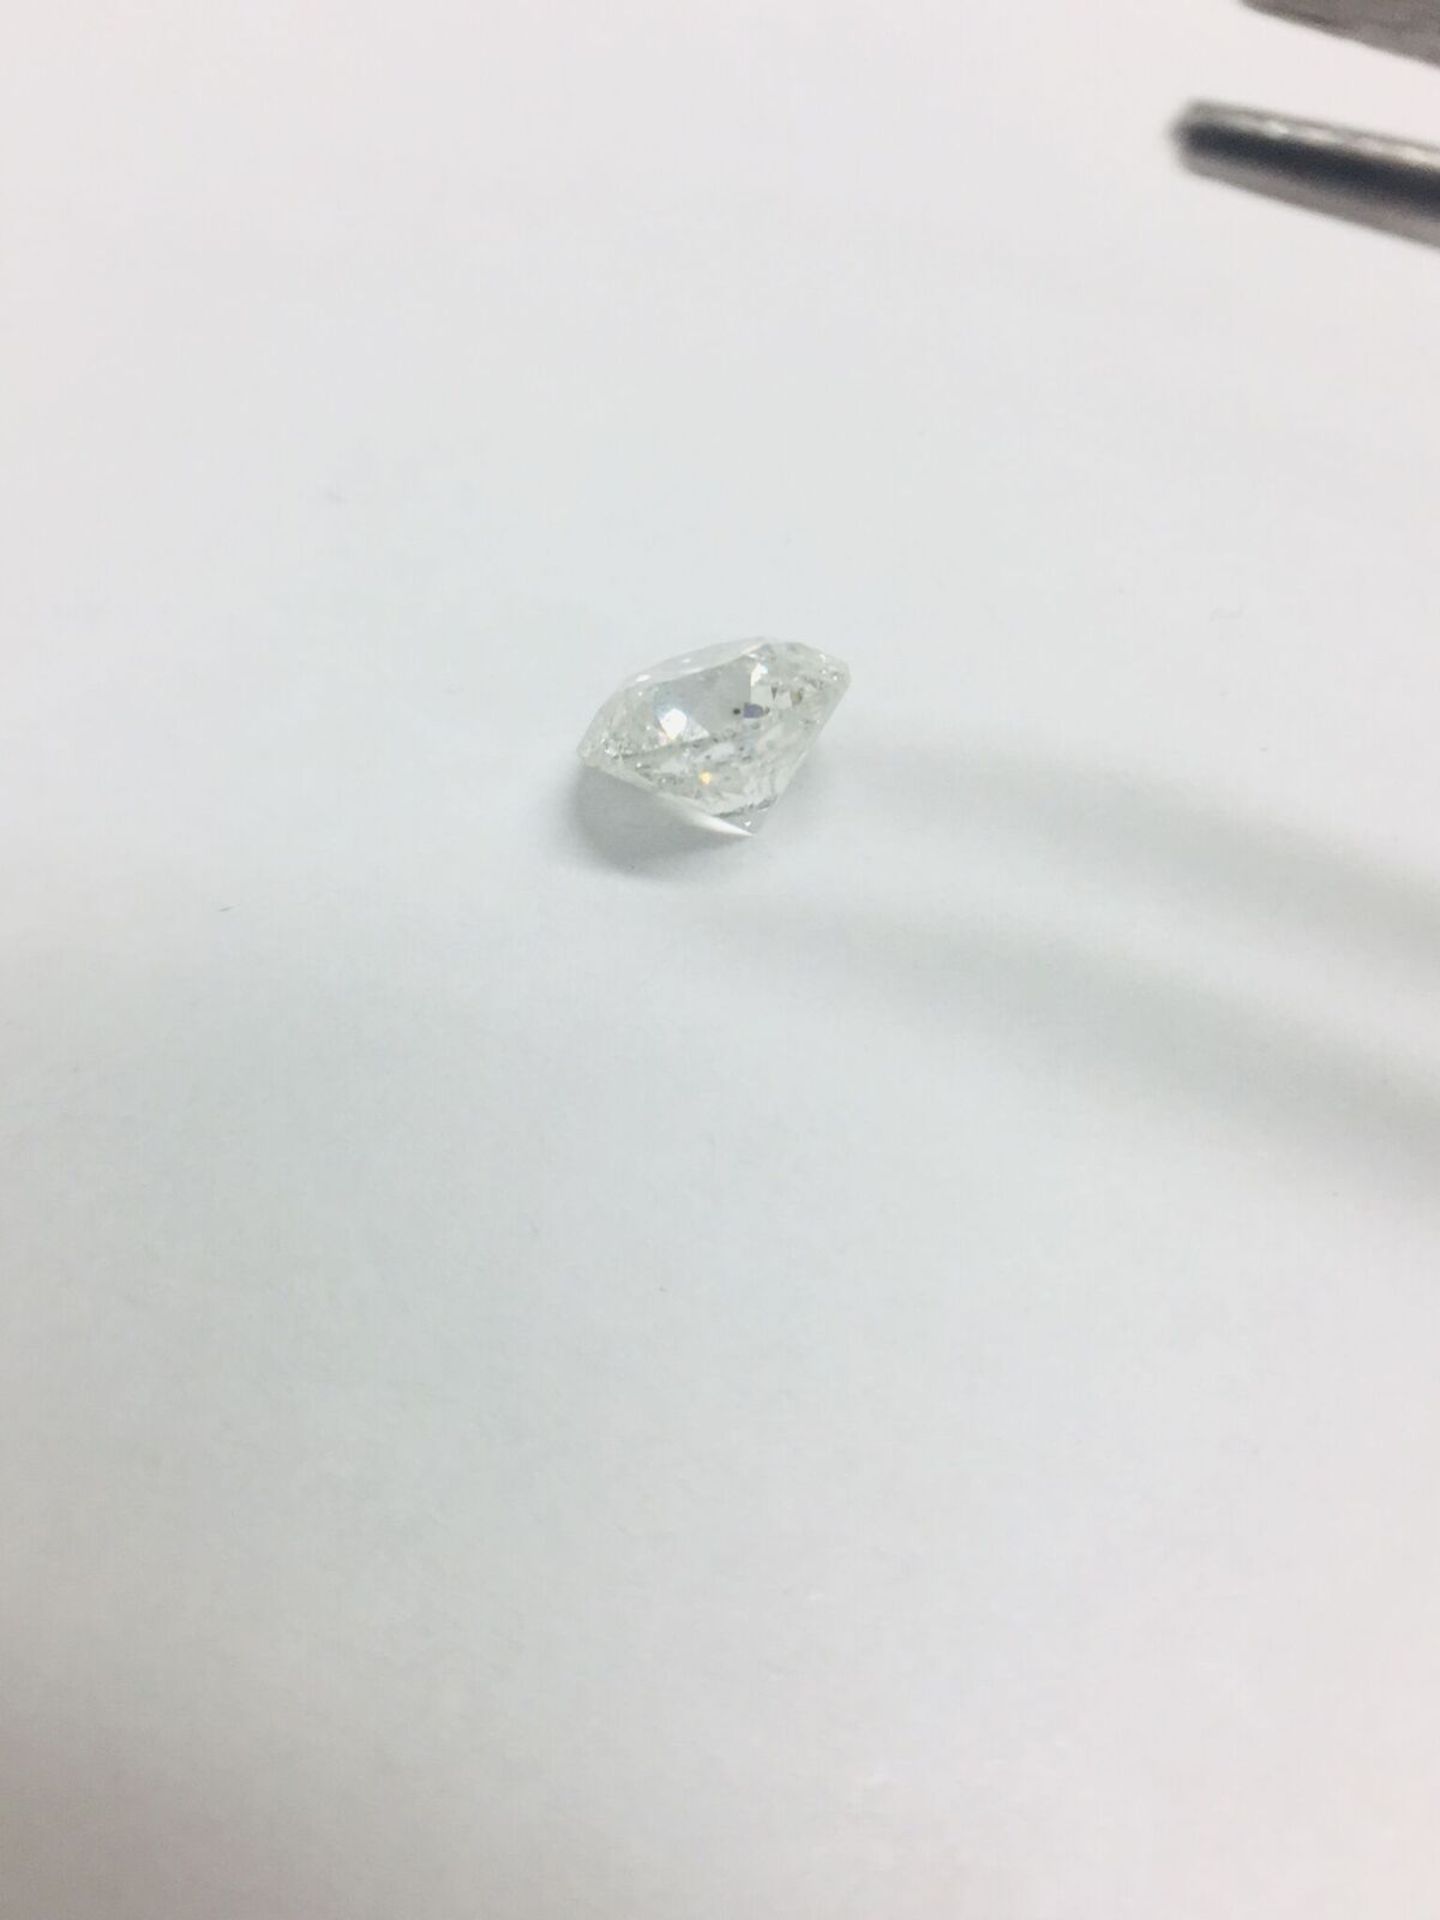 1.20ct Round Brilliant Cut Diamond - Image 2 of 2